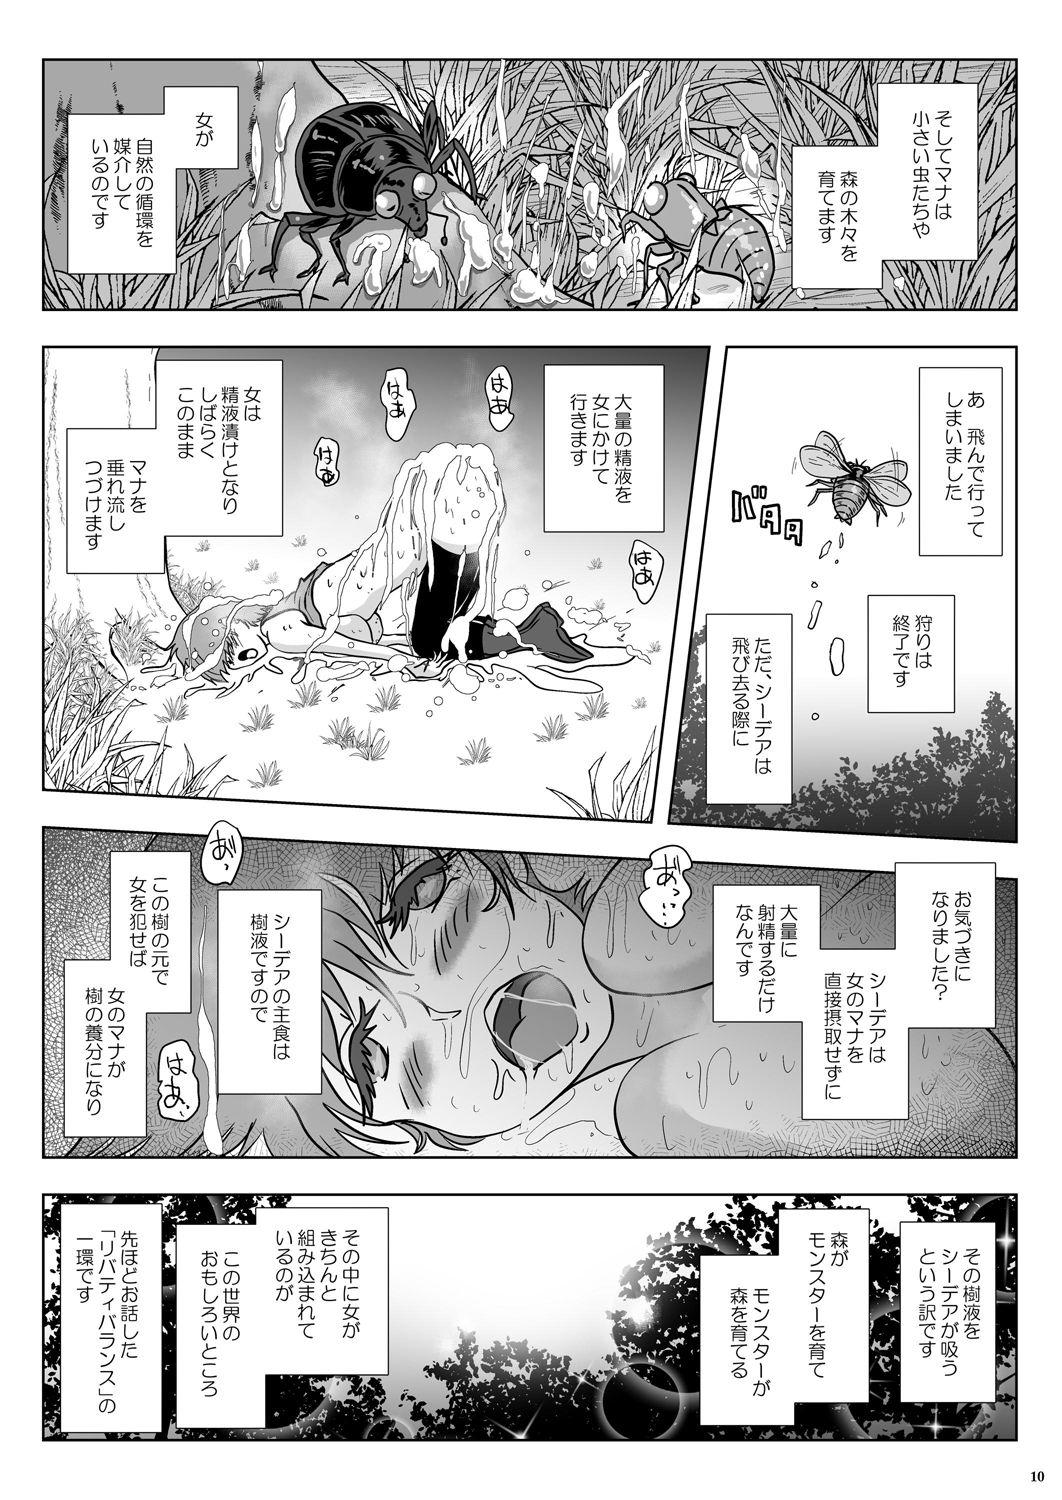 Shaven Go To Larvataurs #02 "Hokaku Chuunyuu Nakadashi Mushi no Miyako" Freeporn - Page 10